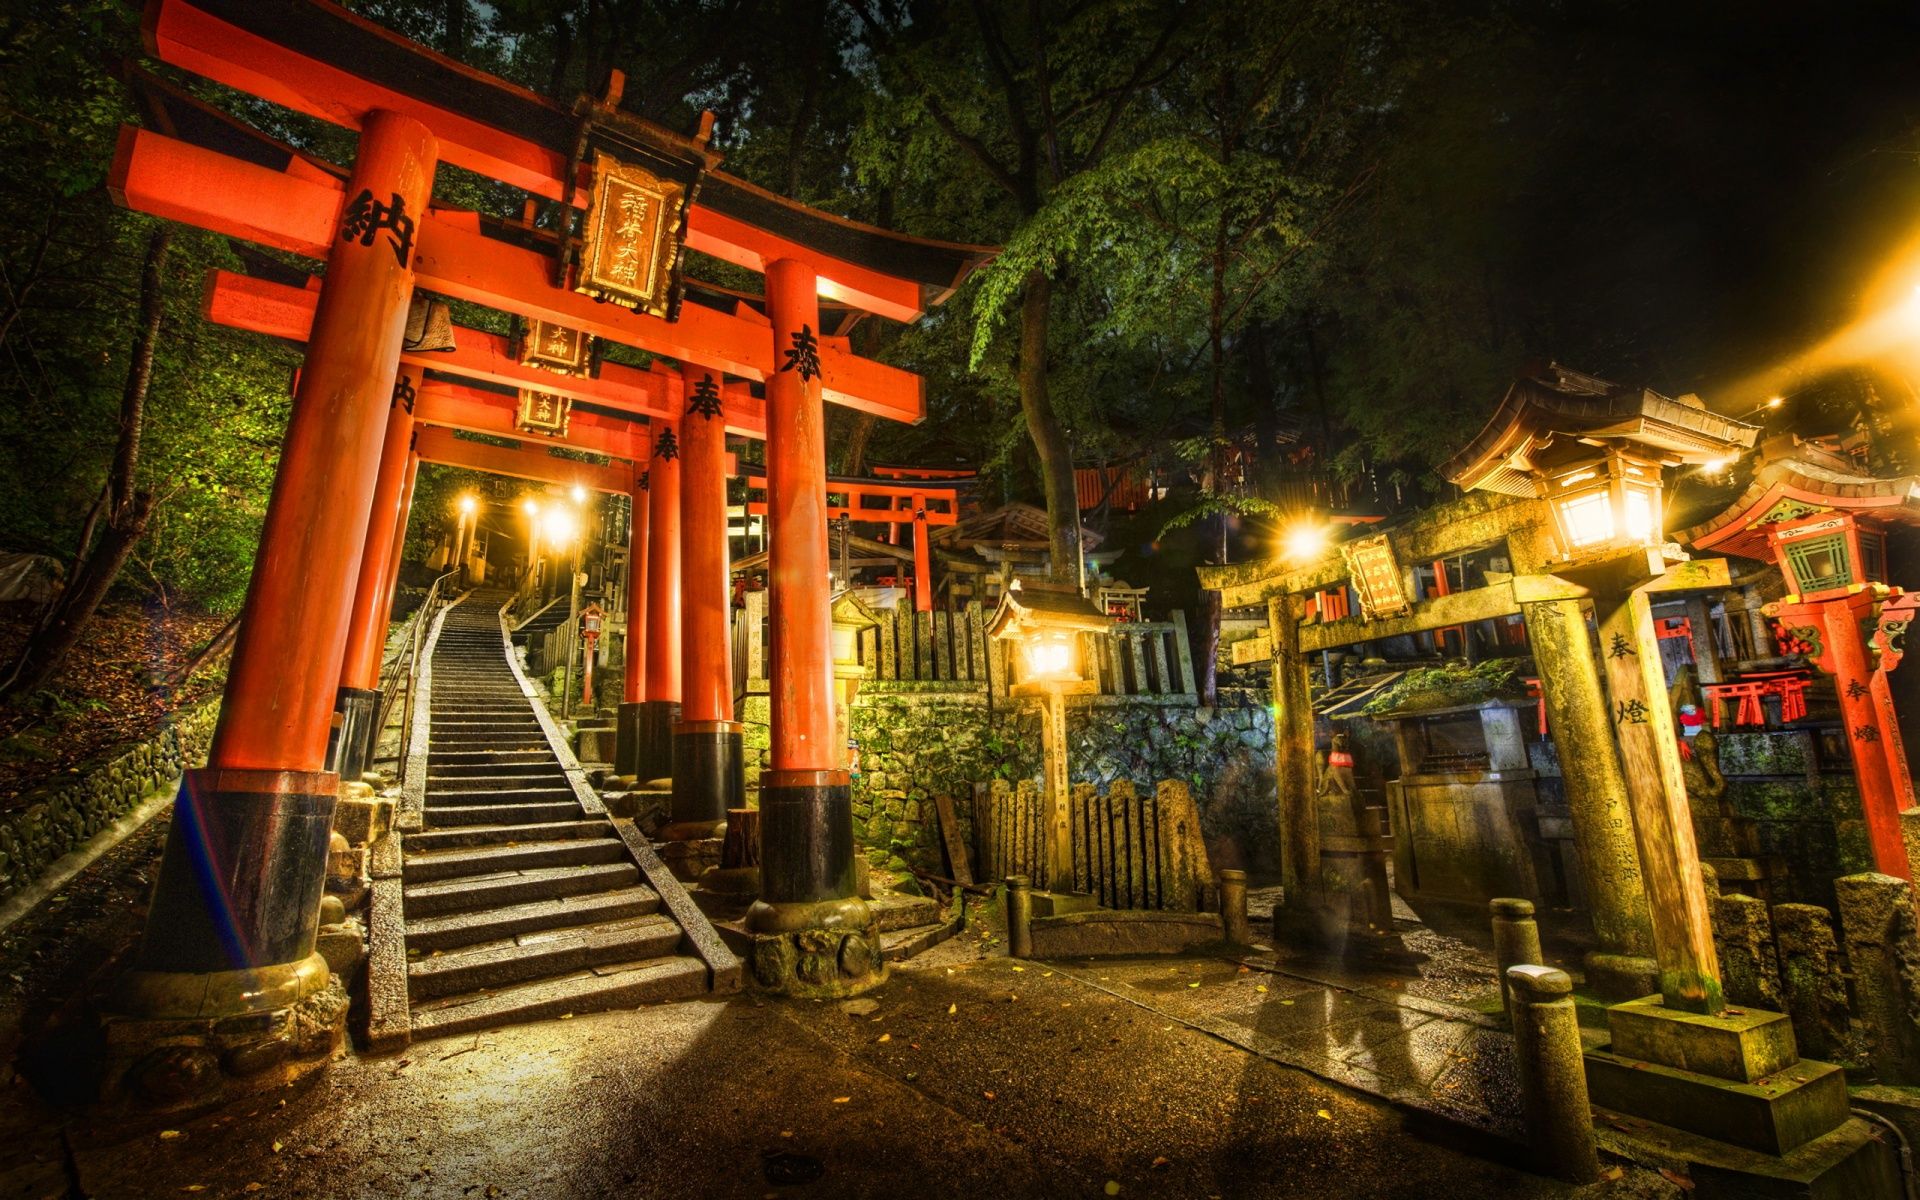 京都に来たら外せない神社仏閣 10 選 - 一生に一度は行ってみたい人気のお寺や神社を厳選 - Go Guides